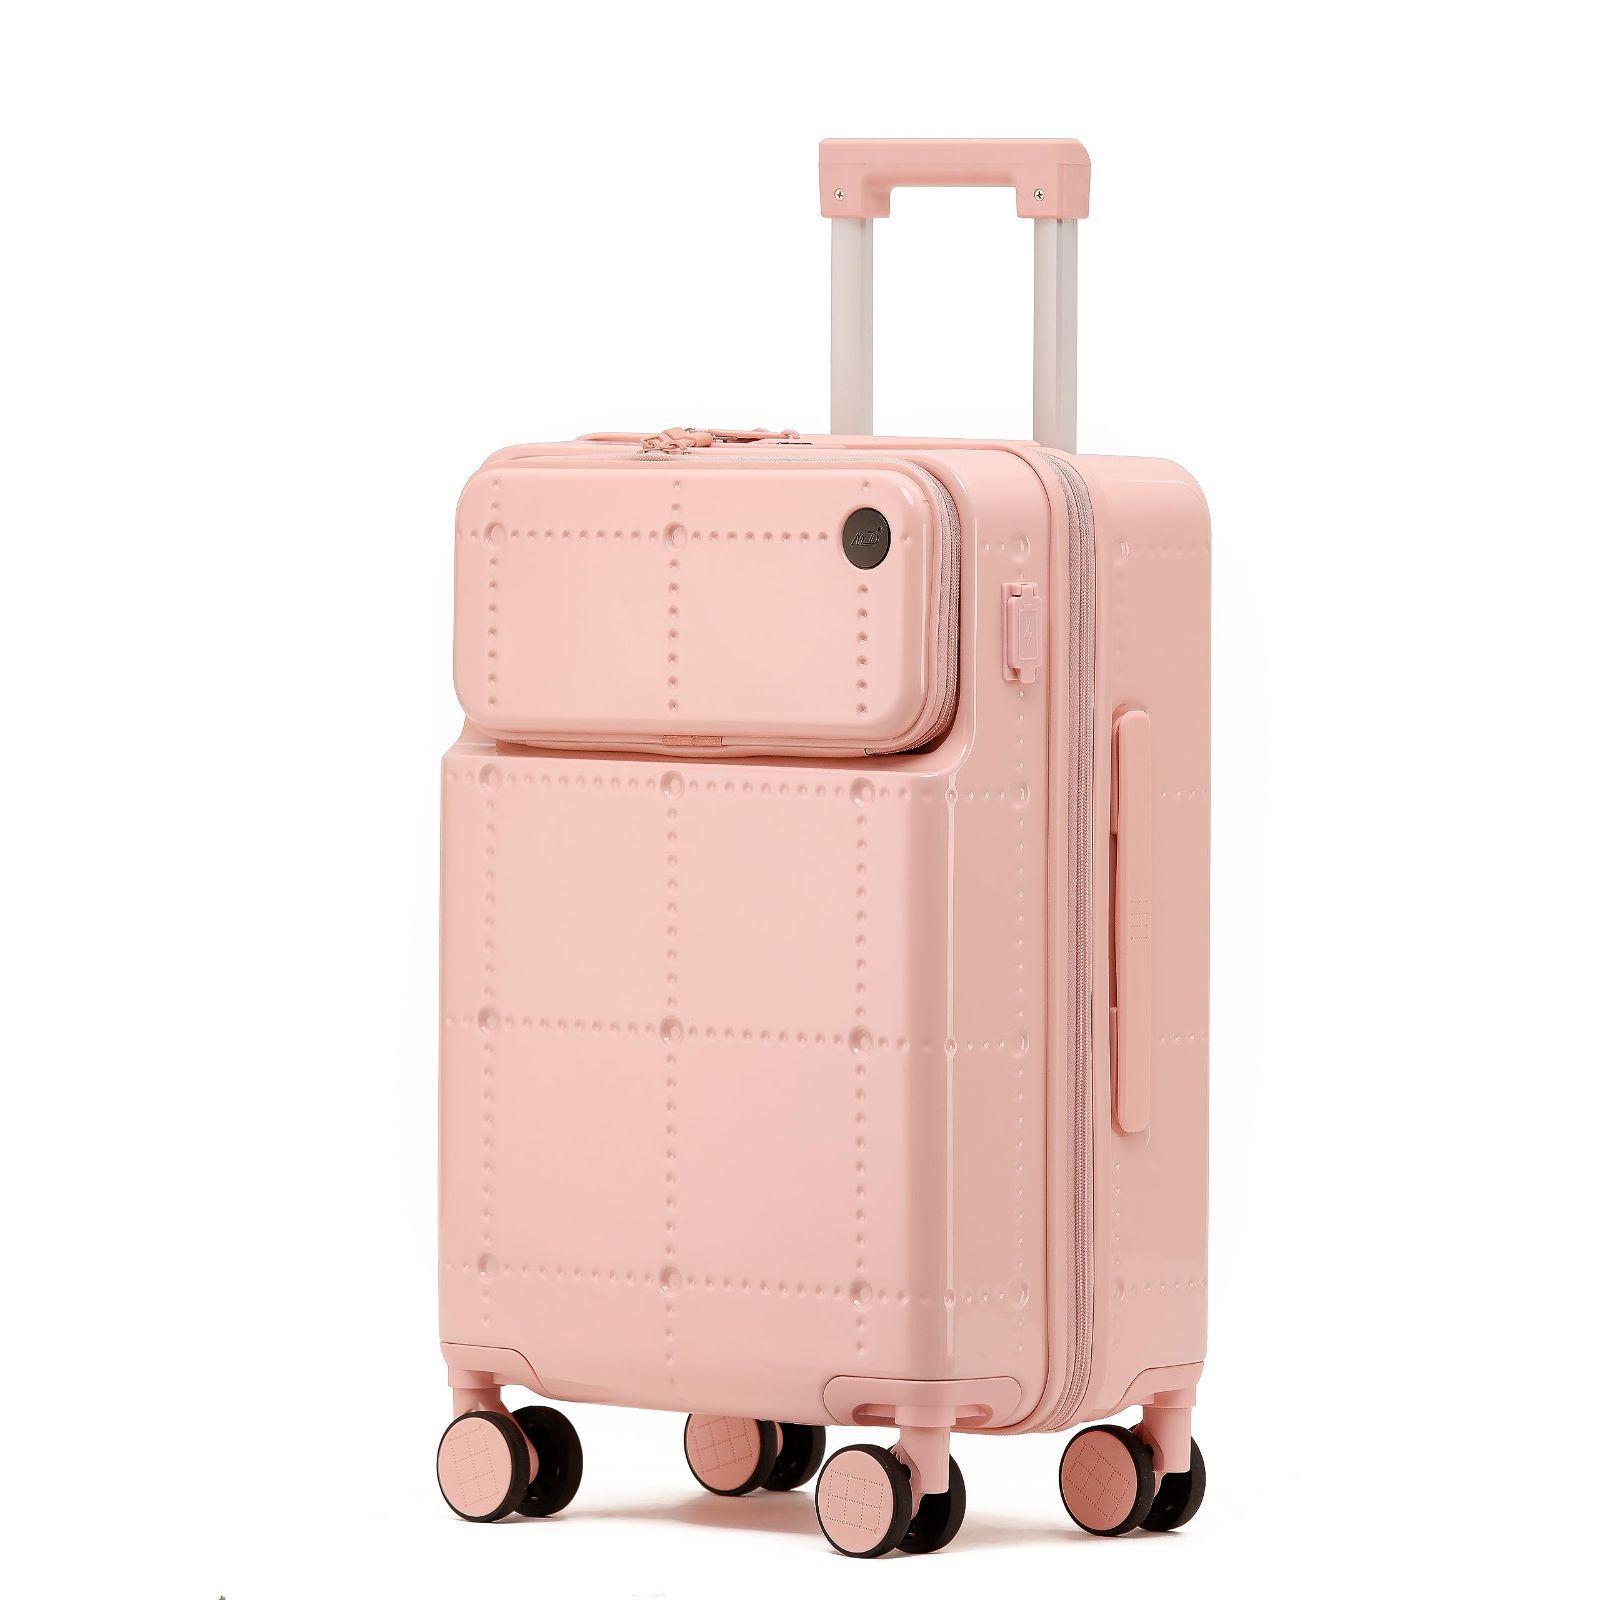 ★スーツケース キャリーバッグ★アルミフレーム 機内持ち込み Sサイズ ピンク